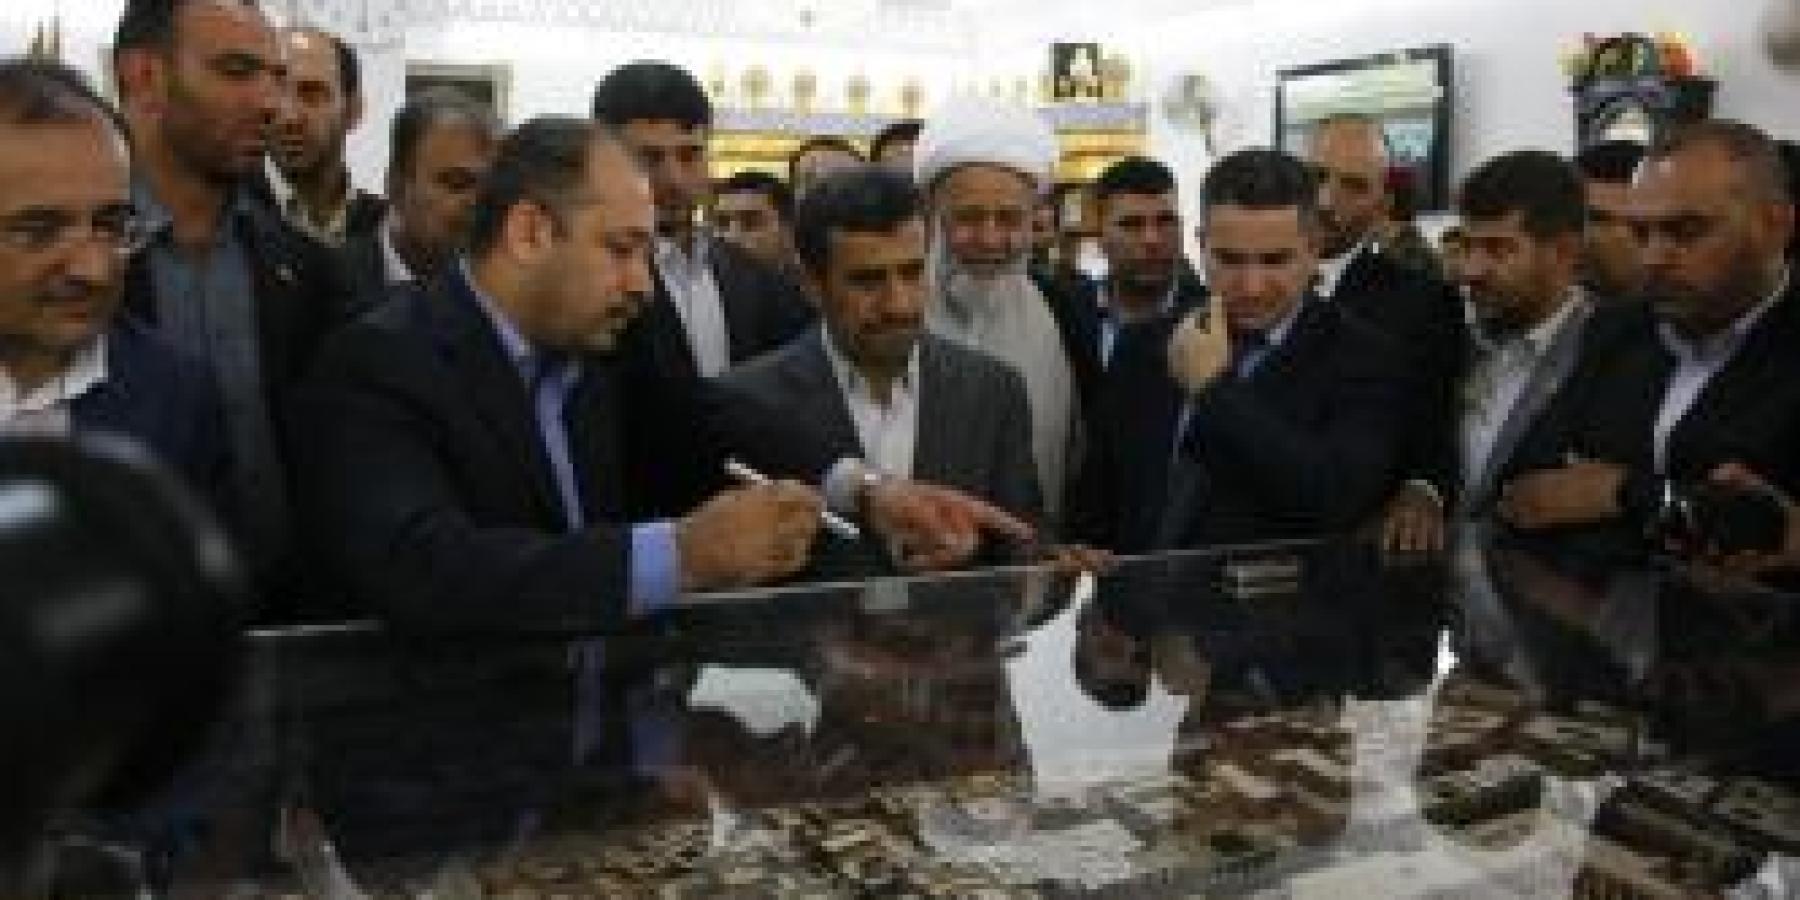 الرئيس الايراني محمود أحمدي نجادي يتشرف بزيارة العتبة العلوية المقدسة ويبدي إعجابه بمشاريع الاعمار والبناء الجارية فيها